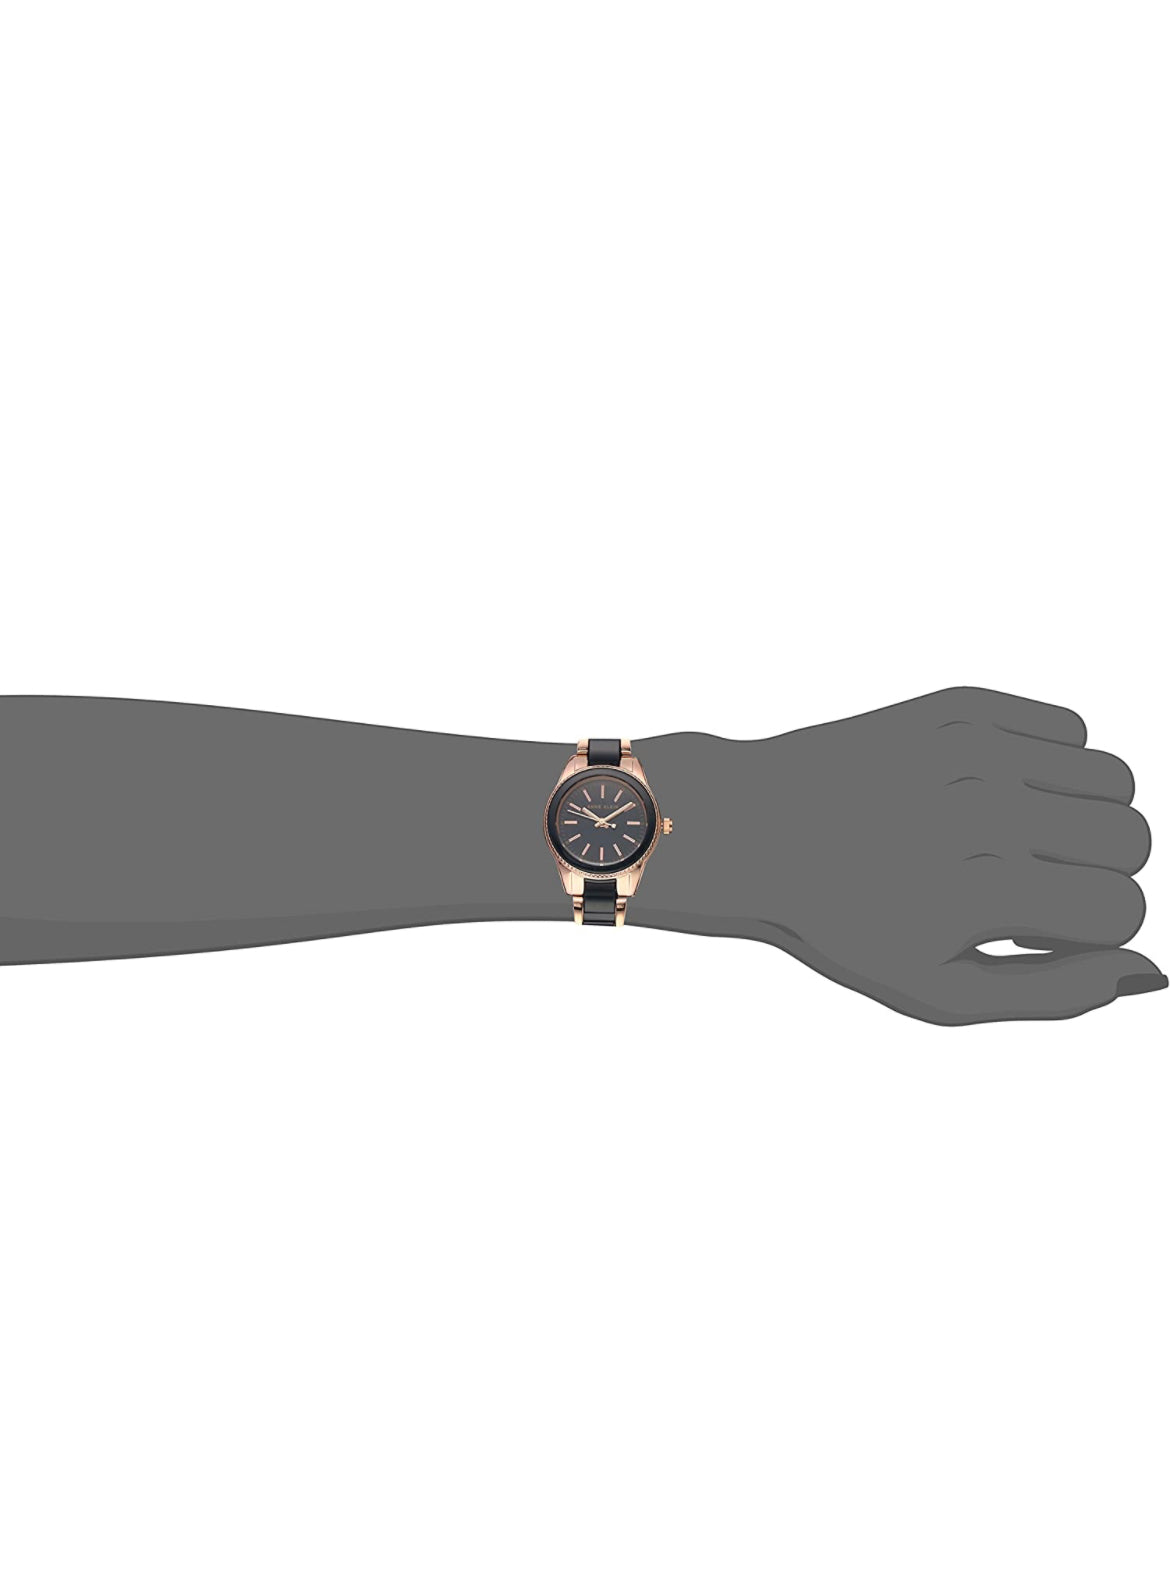 Resin Bracelet Watch- Rose Gold/Navy Blue